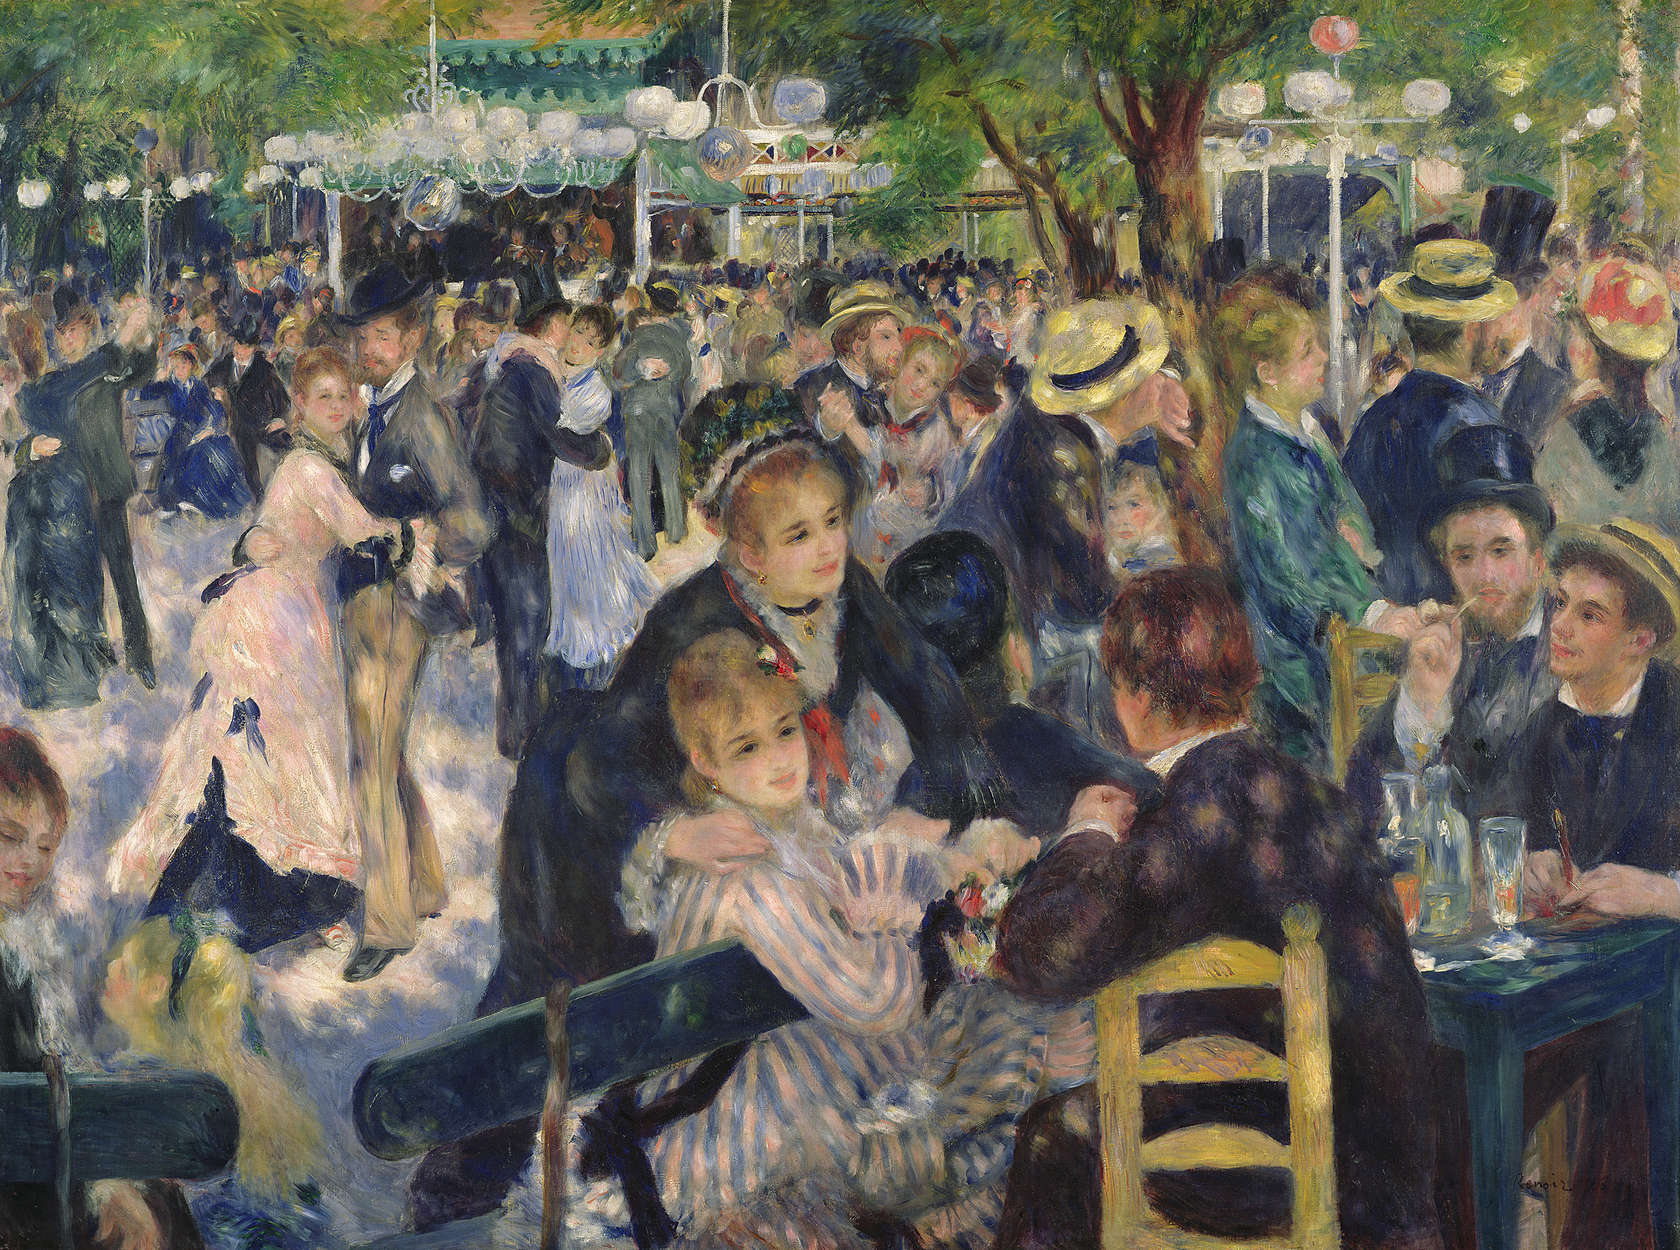             Papier peint panoramique "Bal au Moulin de la Galette" de Pierre Auguste Renoir
        